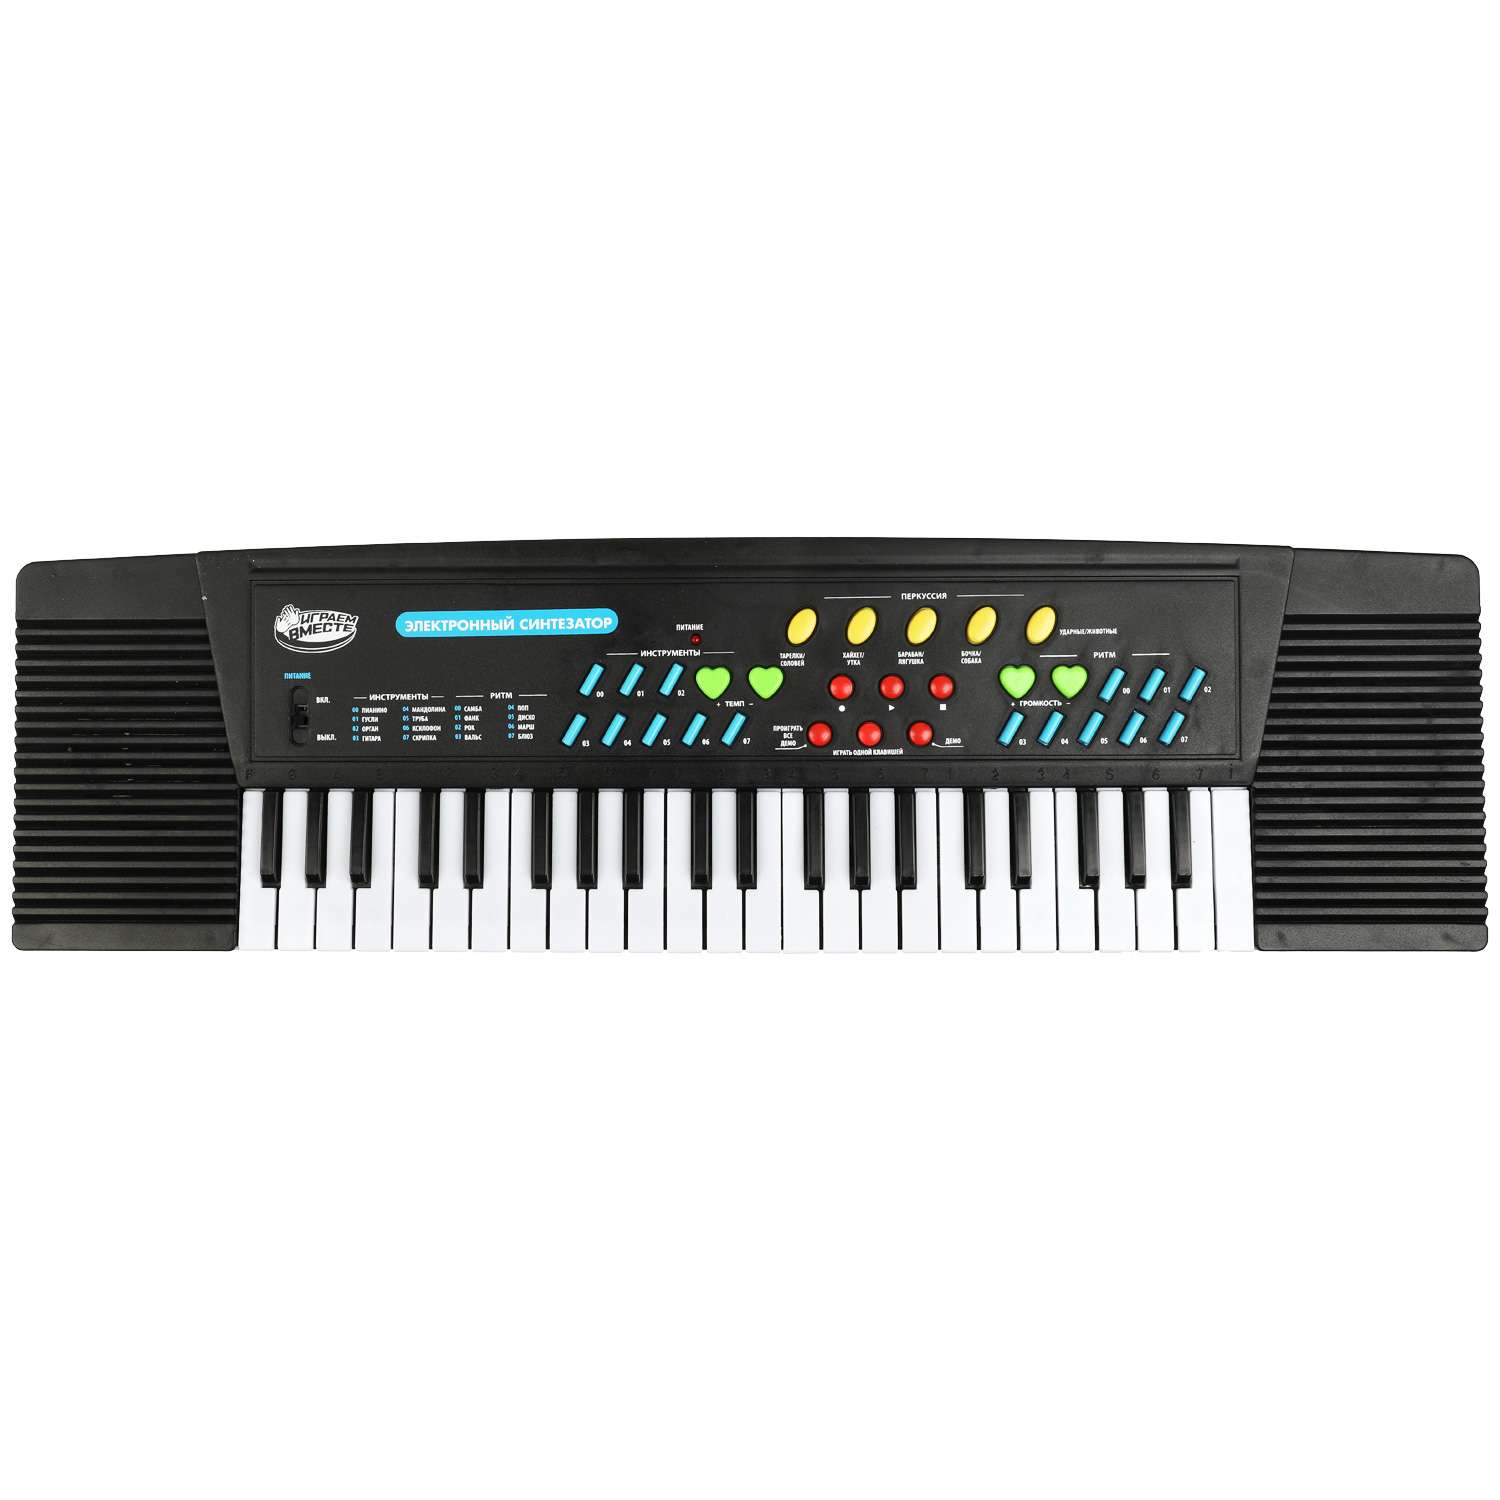 Пианино Играем Вместе Электронный синтезатор 44 клавиши микрофон - фото 2